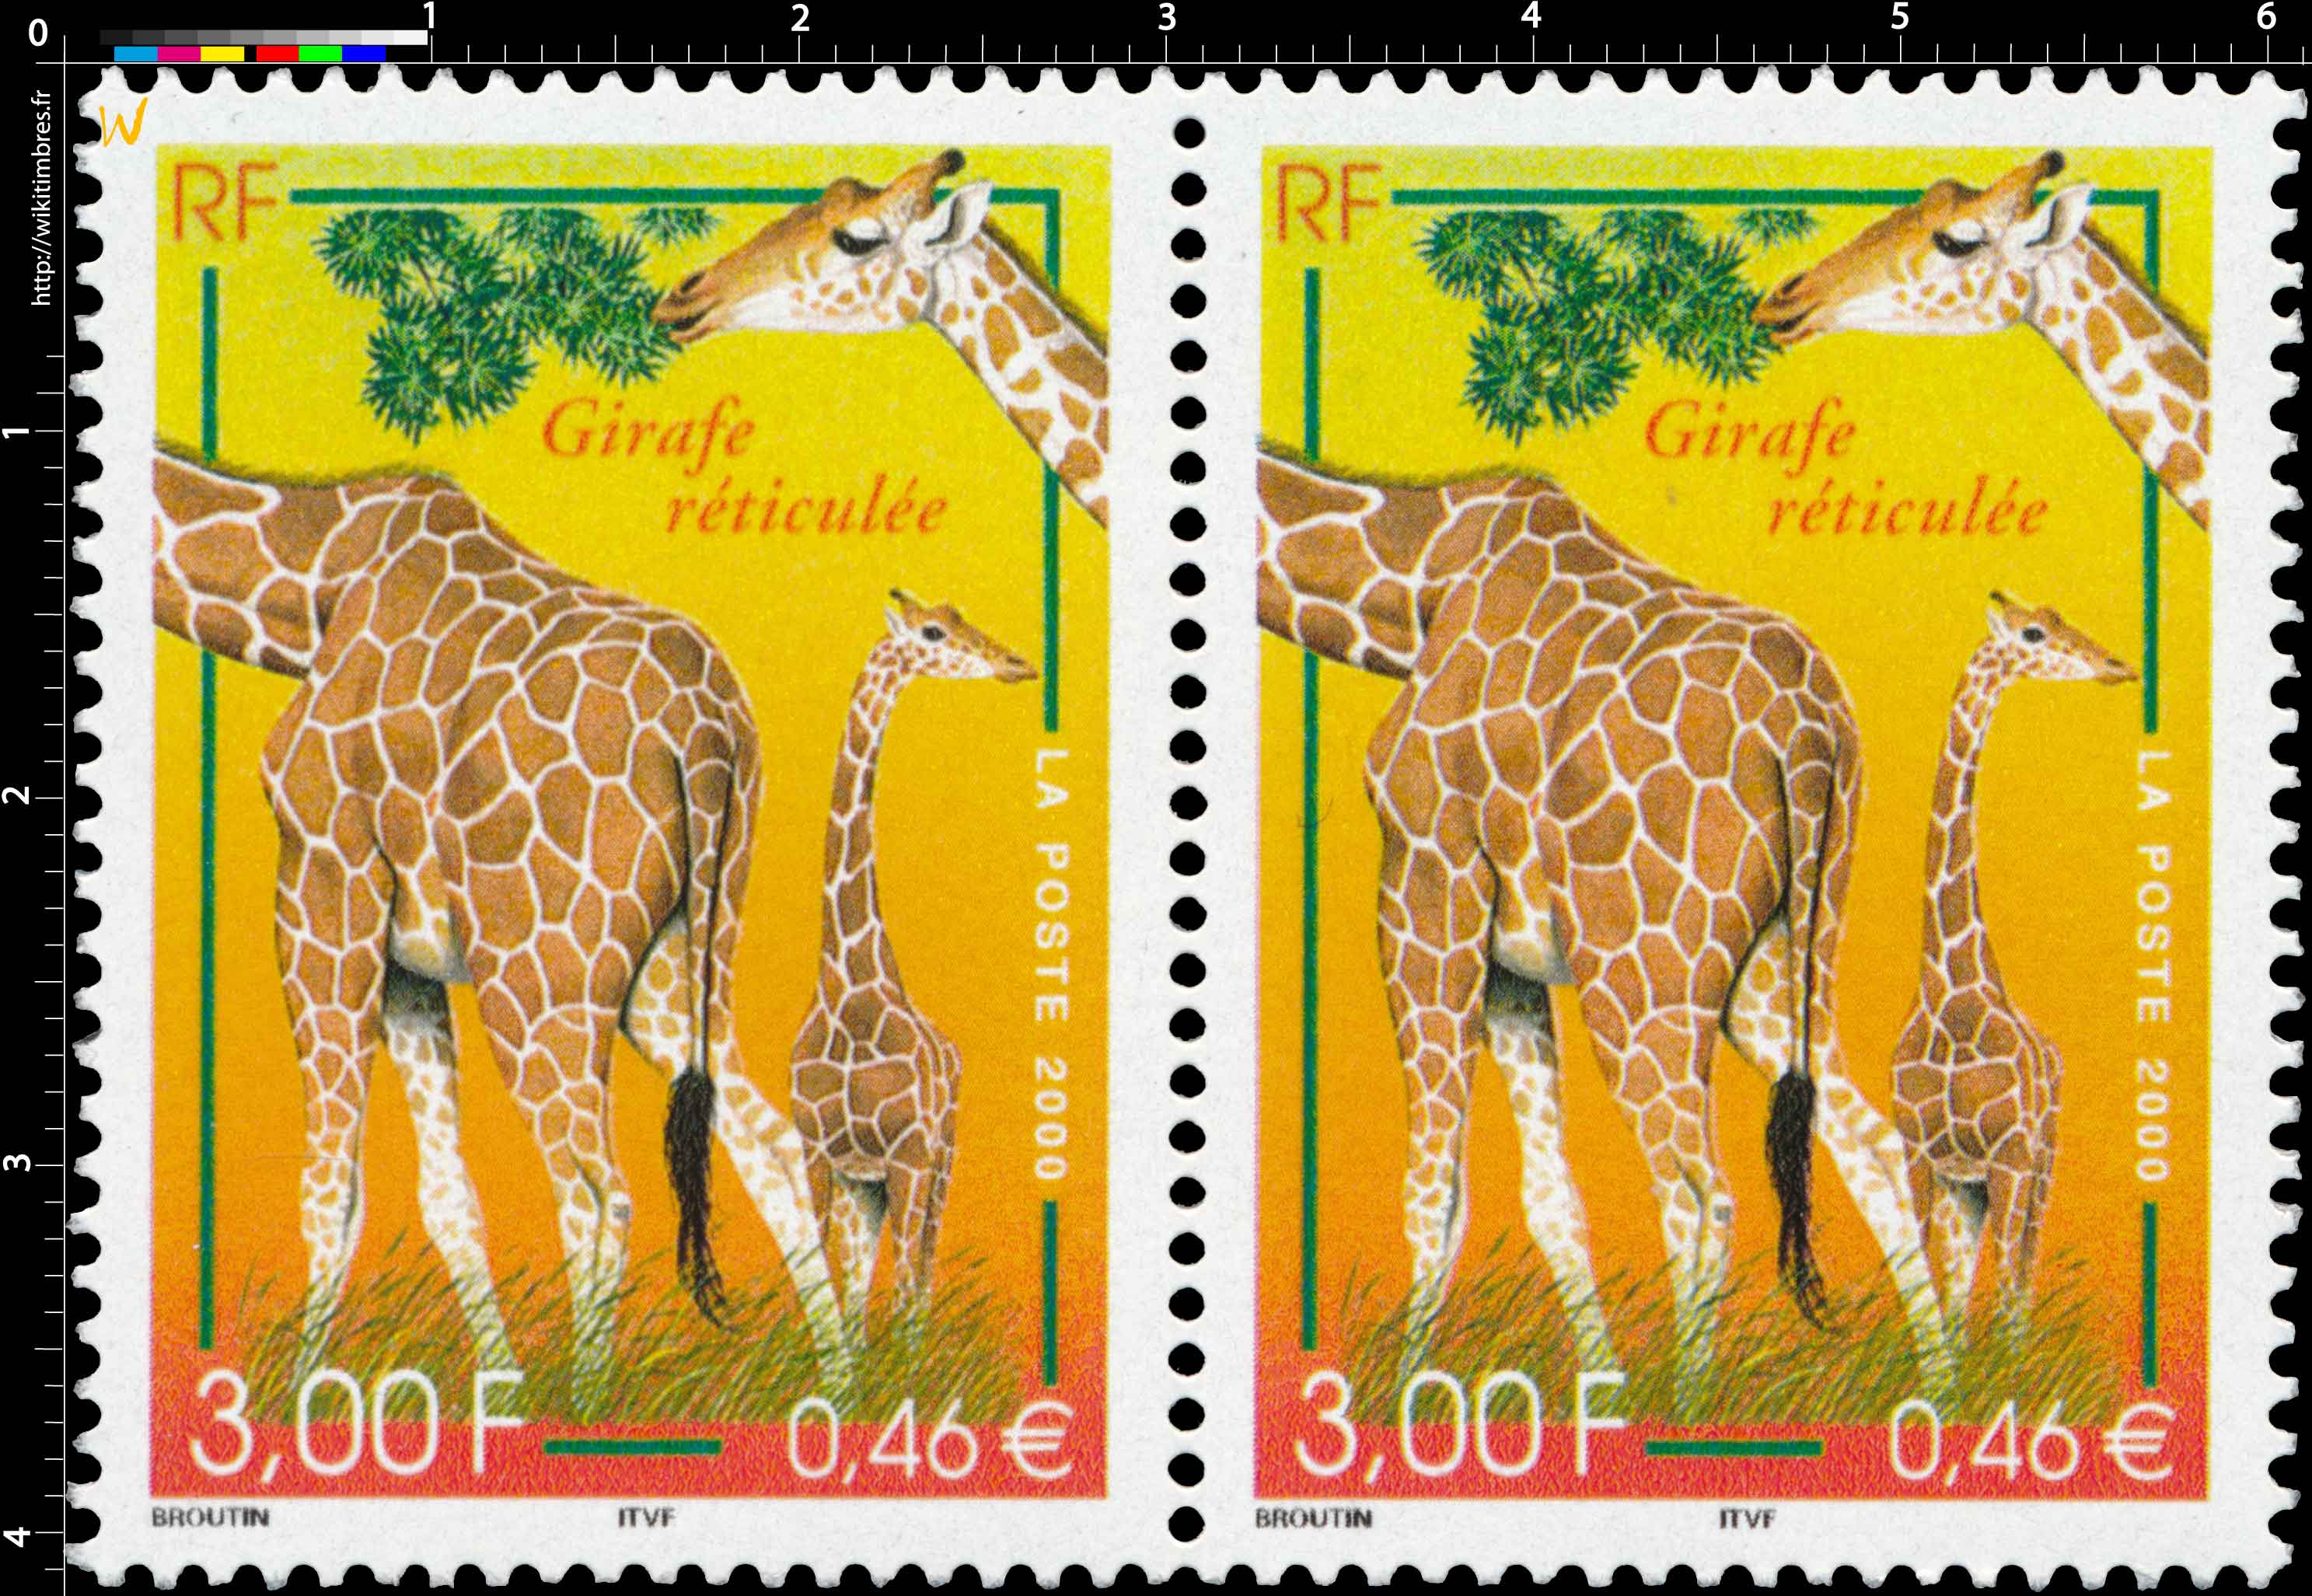 2000 Girafe réticulée